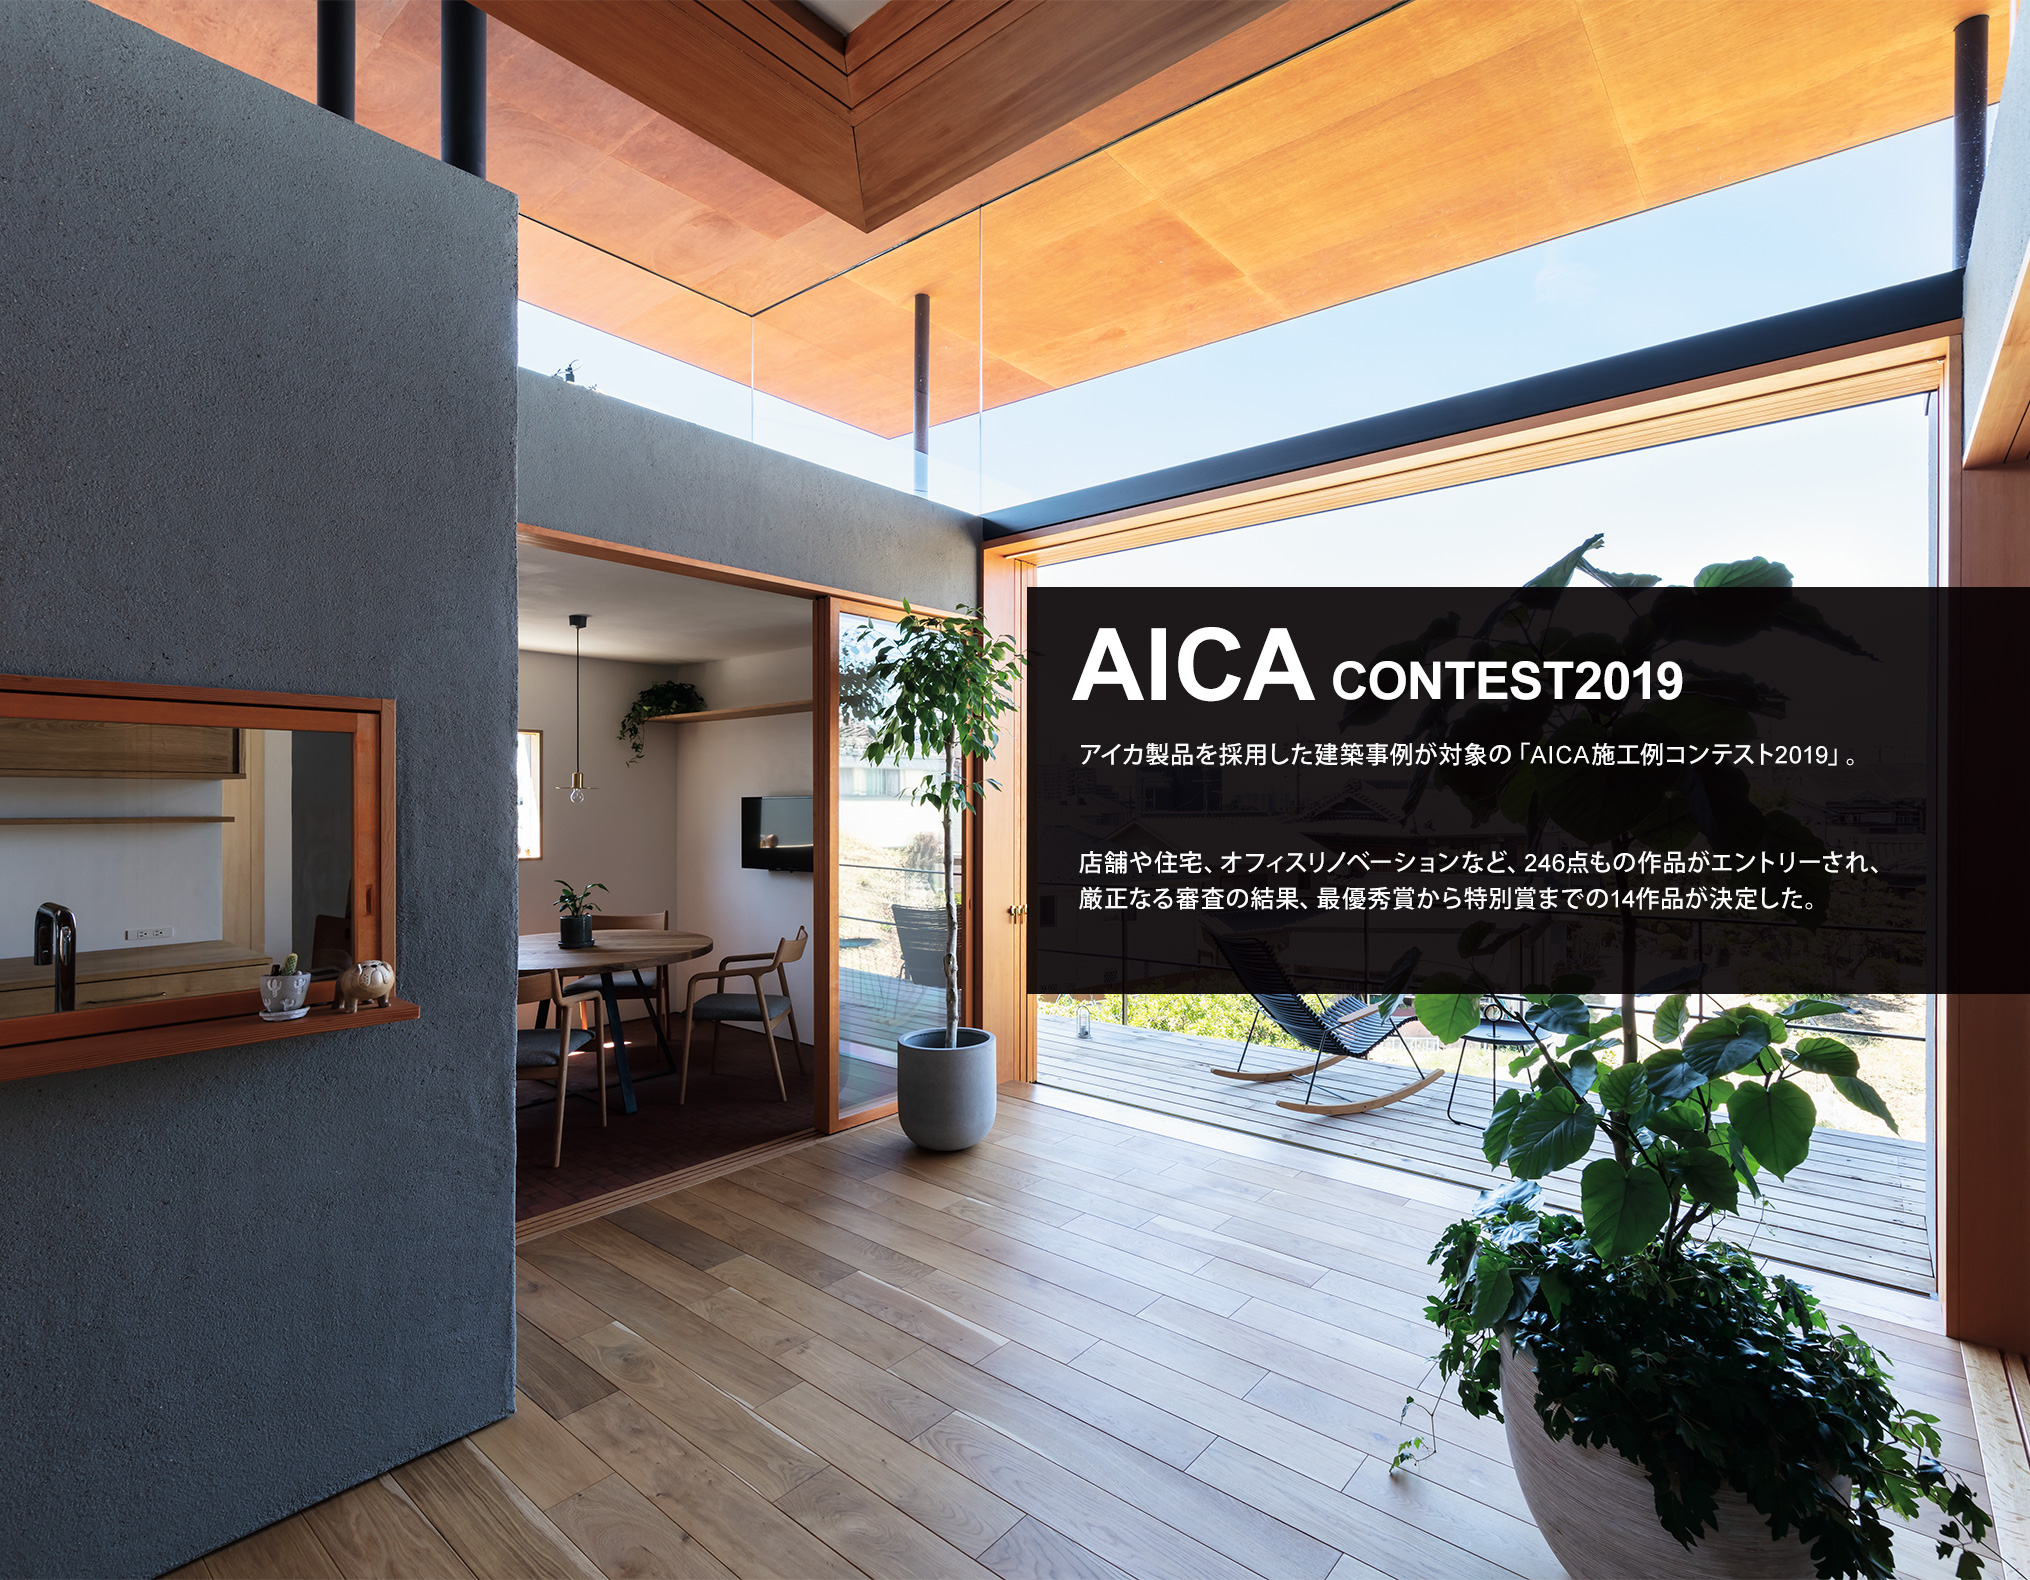 AICA CONTEST 2019　アイカ製品を採用した建築事例が対象の「AICA施工例コンテスト2019」。店舗や住宅、オフィスリノベーションなど、246点もの作品がエントリーされ、厳正なる審査の結果、最優秀賞から特別賞までの14作品が決定した。